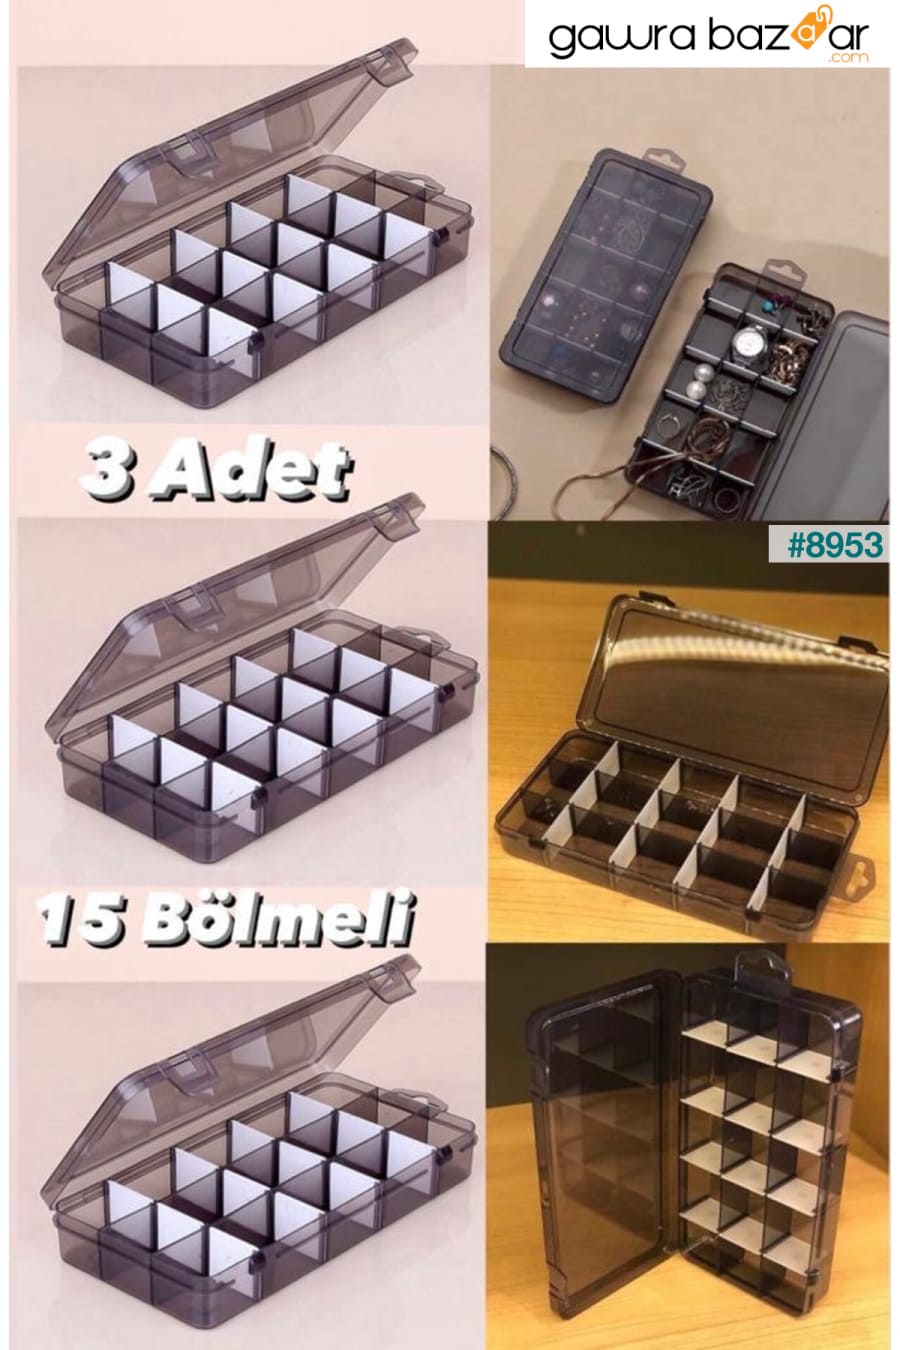 صندوق مجوهرات مكون من 3 قطع مكون من 15 حجرة وخاتم مع غطاء وصندوق منظم وصندوق الخياطة Bayev 0